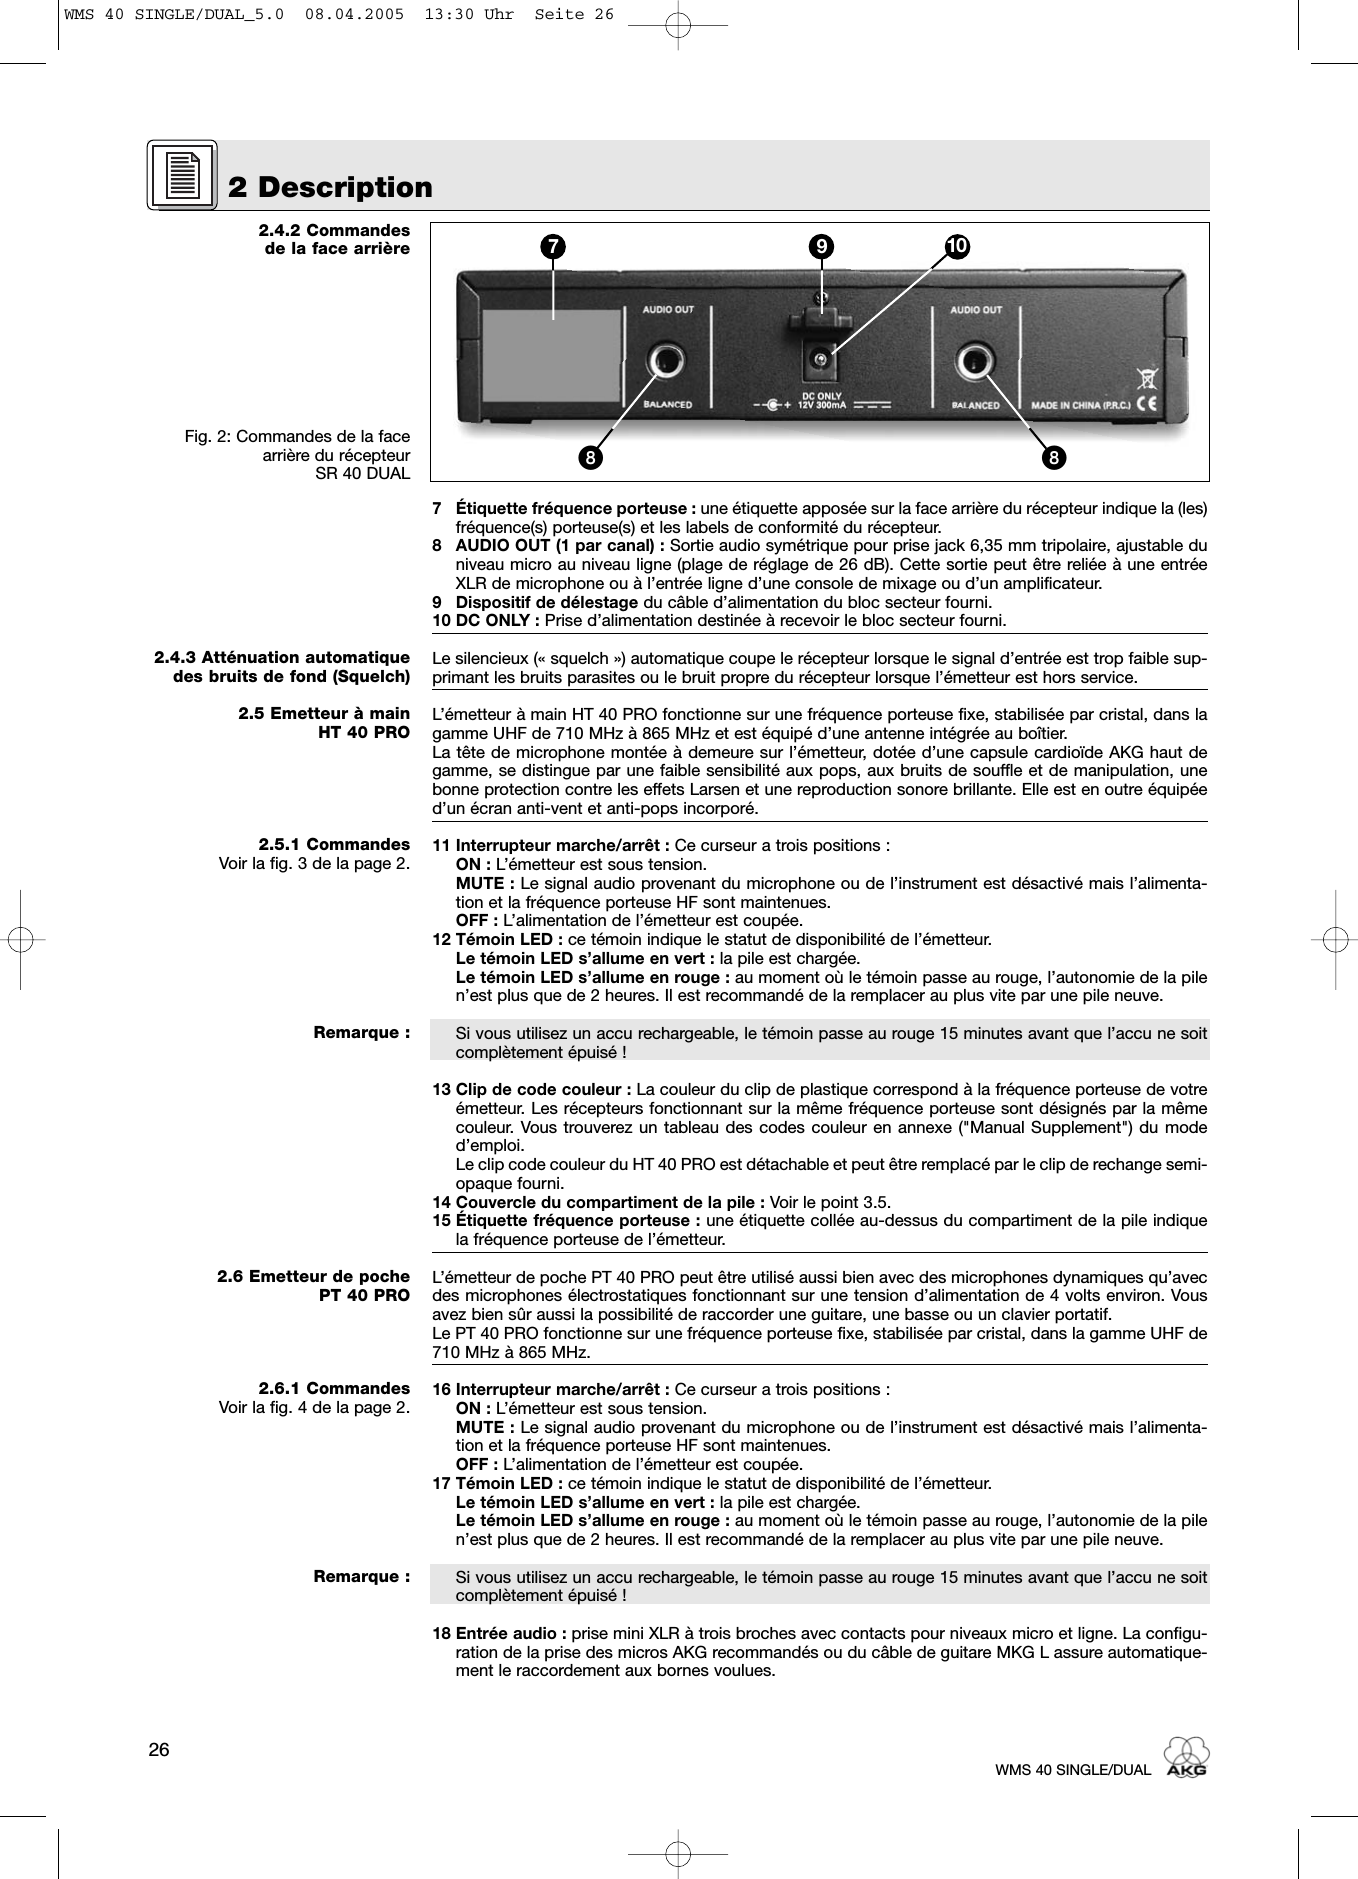 2.4.2 Commandes de la face arrièreFig. 2: Commandes de la facearrière du récepteur SR 40 DUAL2.4.3 Atténuation automatiquedes bruits de fond (Squelch)2.5 Emetteur à main HT 40 PRO2.5.1 CommandesVoir la fig. 3 de la page 2.Remarque :2.6 Emetteur de poche PT 40 PRO2.6.1 CommandesVoir la fig. 4 de la page 2.Remarque :7 Étiquette fréquence porteuse : une étiquette apposée sur la face arrière du récepteur indique la (les)fréquence(s) porteuse(s) et les labels de conformité du récepteur.8 AUDIO OUT (1 par canal) : Sortie audio symétrique pour prise jack 6,35 mm tripolaire, ajustable duniveau micro au niveau ligne (plage de réglage de 26 dB). Cette sortie peut être reliée à une entréeXLR de microphone ou à l’entrée ligne d’une console de mixage ou d’un amplificateur.9 Dispositif de délestage du câble d’alimentation du bloc secteur fourni.10 DC ONLY : Prise d’alimentation destinée à recevoir le bloc secteur fourni.Le silencieux (« squelch ») automatique coupe le récepteur lorsque le signal d’entrée est trop faible sup-primant les bruits parasites ou le bruit propre du récepteur lorsque l’émetteur est hors service.L’émetteur à main HT 40 PRO fonctionne sur une fréquence porteuse fixe, stabilisée par cristal, dans lagamme UHF de 710 MHz à 865 MHz et est équipé d’une antenne intégrée au boîtier.La tête de microphone montée à demeure sur l’émetteur, dotée d’une capsule cardioïde AKG haut degamme, se distingue par une faible sensibilité aux pops, aux bruits de souffle et de manipulation, unebonne protection contre les effets Larsen et une reproduction sonore brillante. Elle est en outre équipéed’un écran anti-vent et anti-pops incorporé.11 Interrupteur marche/arrêt : Ce curseur a trois positions :ON : L’émetteur est sous tension.MUTE : Le signal audio provenant du microphone ou de l’instrument est désactivé mais l’alimenta-tion et la fréquence porteuse HF sont maintenues.OFF : L’alimentation de l’émetteur est coupée.12 Témoin LED : ce témoin indique le statut de disponibilité de l’émetteur.Le témoin LED s’allume en vert : la pile est chargée.Le témoin LED s’allume en rouge : au moment où le témoin passe au rouge, l’autonomie de la pilen’est plus que de 2 heures. Il est recommandé de la remplacer au plus vite par une pile neuve.Si vous utilisez un accu rechargeable, le témoin passe au rouge 15 minutes avant que l’accu ne soitcomplètement épuisé !13 Clip de code couleur : La couleur du clip de plastique correspond à la fréquence porteuse de votreémetteur. Les récepteurs fonctionnant sur la même fréquence porteuse sont désignés par la mêmecouleur. Vous trouverez un tableau des codes couleur en annexe (&quot;Manual Supplement&quot;) du moded’emploi.Le clip code couleur du HT 40 PRO est détachable et peut être remplacé par le clip de rechange semi-opaque fourni.14 Couvercle du compartiment de la pile : Voir le point 3.5.15 Étiquette fréquence porteuse : une étiquette collée au-dessus du compartiment de la pile indiquela fréquence porteuse de l’émetteur.L’émetteur de poche PT 40 PRO peut être utilisé aussi bien avec des microphones dynamiques qu’avecdes microphones électrostatiques fonctionnant sur une tension d’alimentation de 4 volts environ. Vousavez bien sûr aussi la possibilité de raccorder une guitare, une basse ou un clavier portatif.Le PT 40 PRO fonctionne sur une fréquence porteuse fixe, stabilisée par cristal, dans la gamme UHF de710 MHz à 865 MHz. 16 Interrupteur marche/arrêt : Ce curseur a trois positions :ON : L’émetteur est sous tension.MUTE : Le signal audio provenant du microphone ou de l’instrument est désactivé mais l’alimenta-tion et la fréquence porteuse HF sont maintenues.OFF : L’alimentation de l’émetteur est coupée.17 Témoin LED : ce témoin indique le statut de disponibilité de l’émetteur.Le témoin LED s’allume en vert : la pile est chargée.Le témoin LED s’allume en rouge : au moment où le témoin passe au rouge, l’autonomie de la pilen’est plus que de 2 heures. Il est recommandé de la remplacer au plus vite par une pile neuve.Si vous utilisez un accu rechargeable, le témoin passe au rouge 15 minutes avant que l’accu ne soitcomplètement épuisé !18 Entrée audio : prise mini XLR à trois broches avec contacts pour niveaux micro et ligne. La configu-ration de la prise des micros AKG recommandés ou du câble de guitare MKG L assure automatique-ment le raccordement aux bornes voulues.2 Description26WMS 40 SINGLE/DUAL7 9 10ᕨᕨWMS 40 SINGLE/DUAL_5.0  08.04.2005  13:30 Uhr  Seite 26